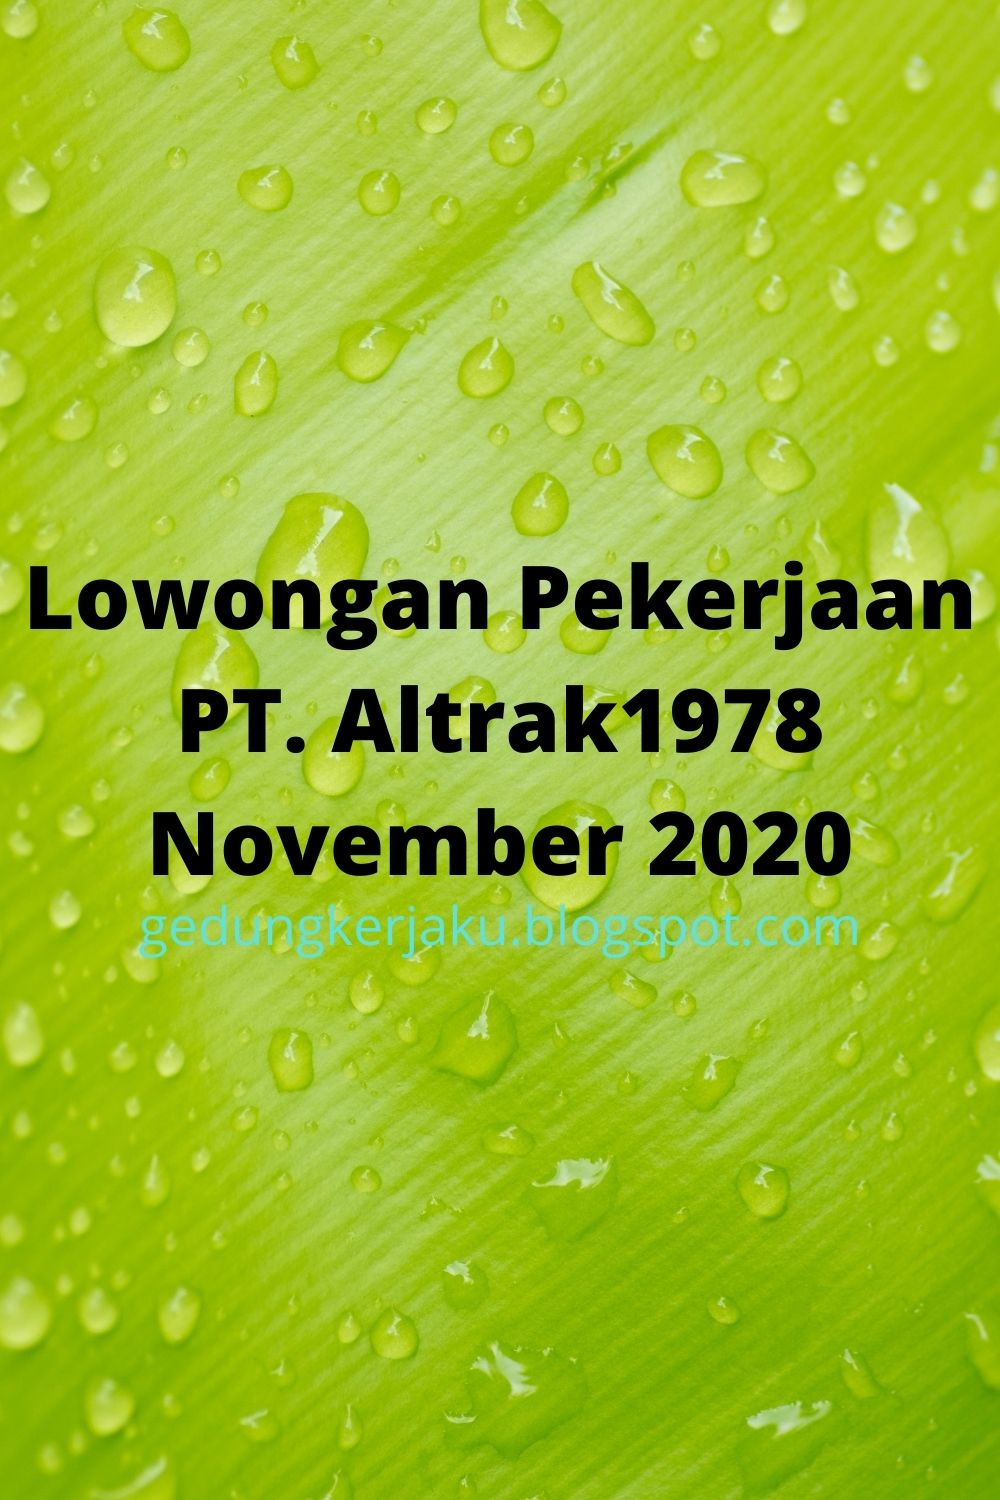 Lowongan Pekerjaan PT. Altrak1978 November 2020